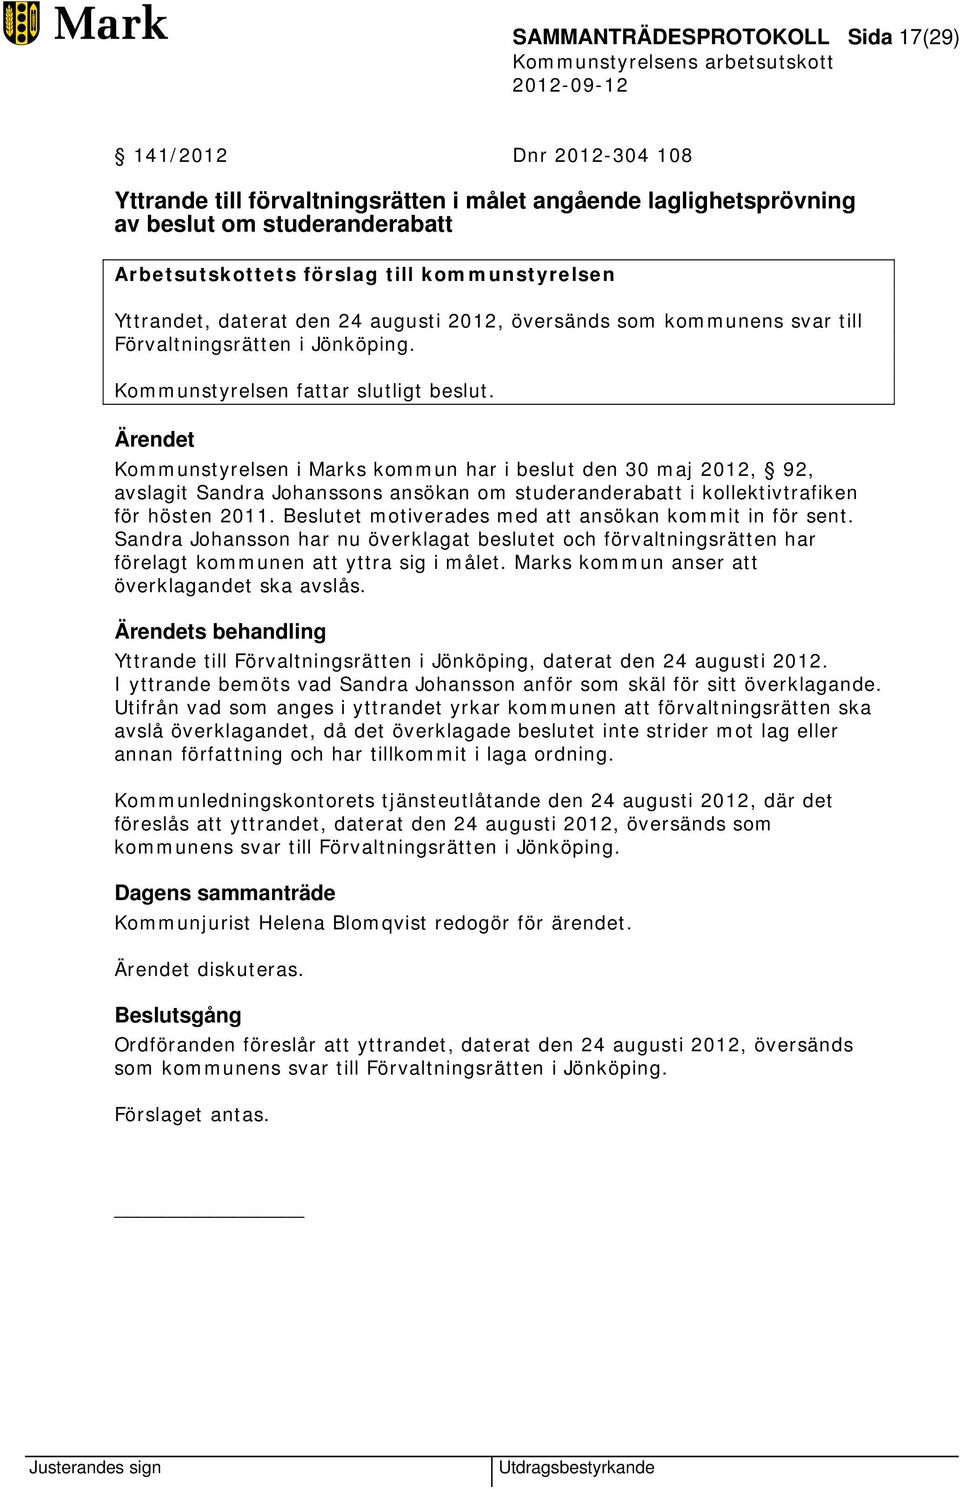 Kommunstyrelsen i Marks kommun har i beslut den 30 maj 2012, 92, avslagit Sandra Johanssons ansökan om studeranderabatt i kollektivtrafiken för hösten 2011.